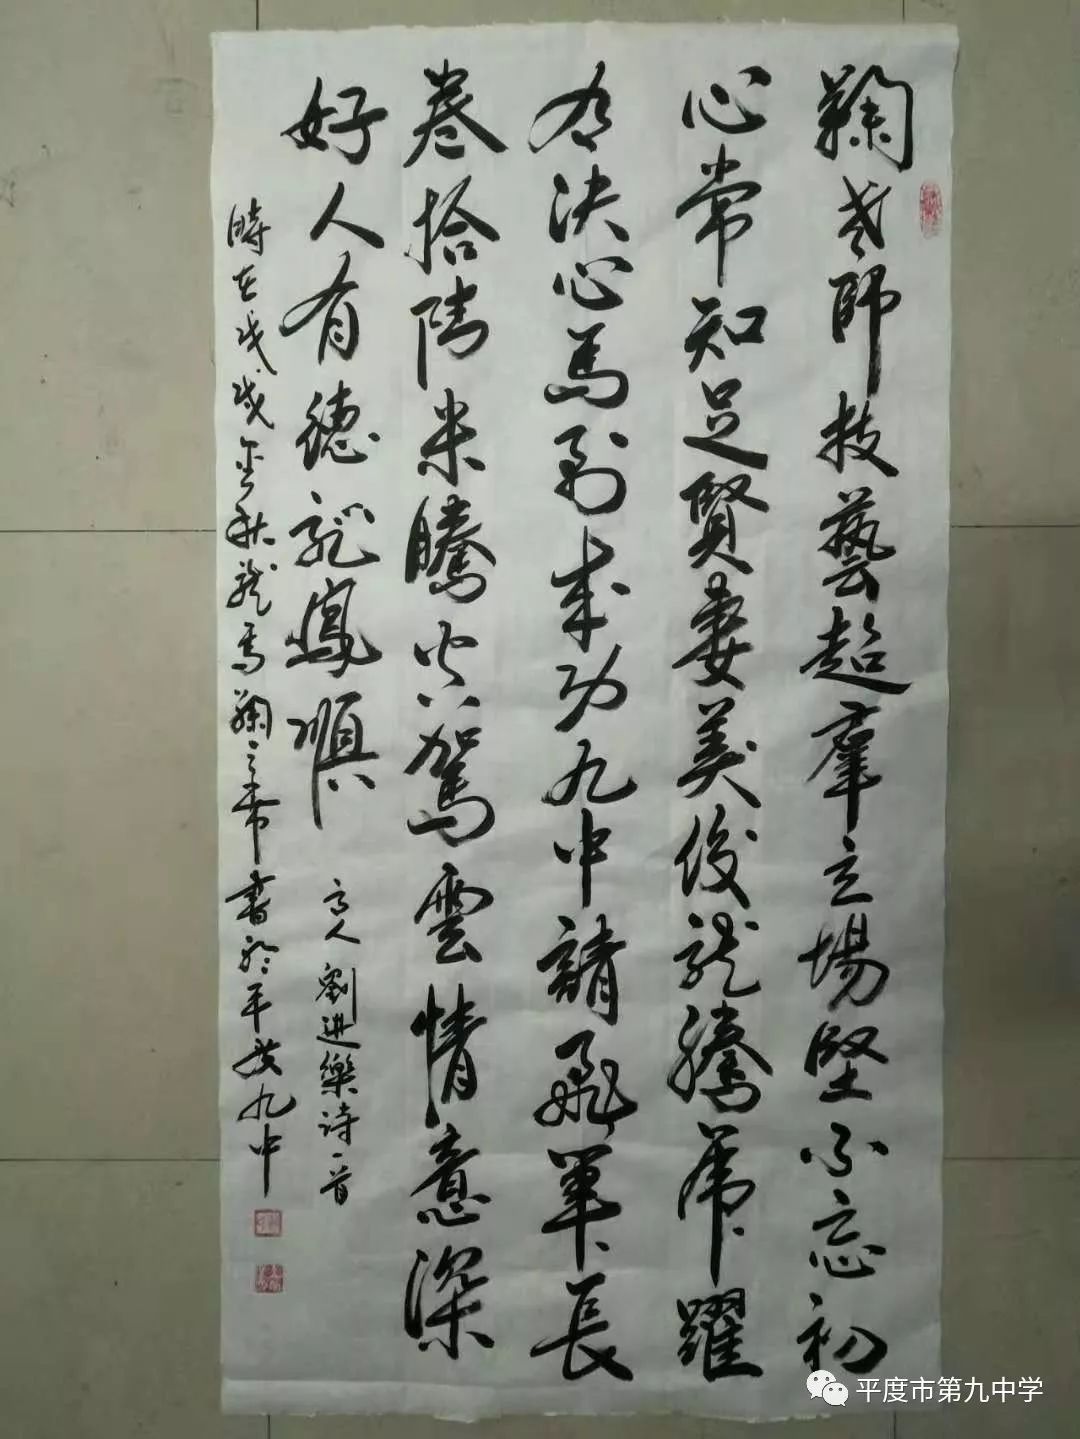 昨日,刘进乐先生作了一首藏头诗,字里行间对其书法造诣和拳拳爱心